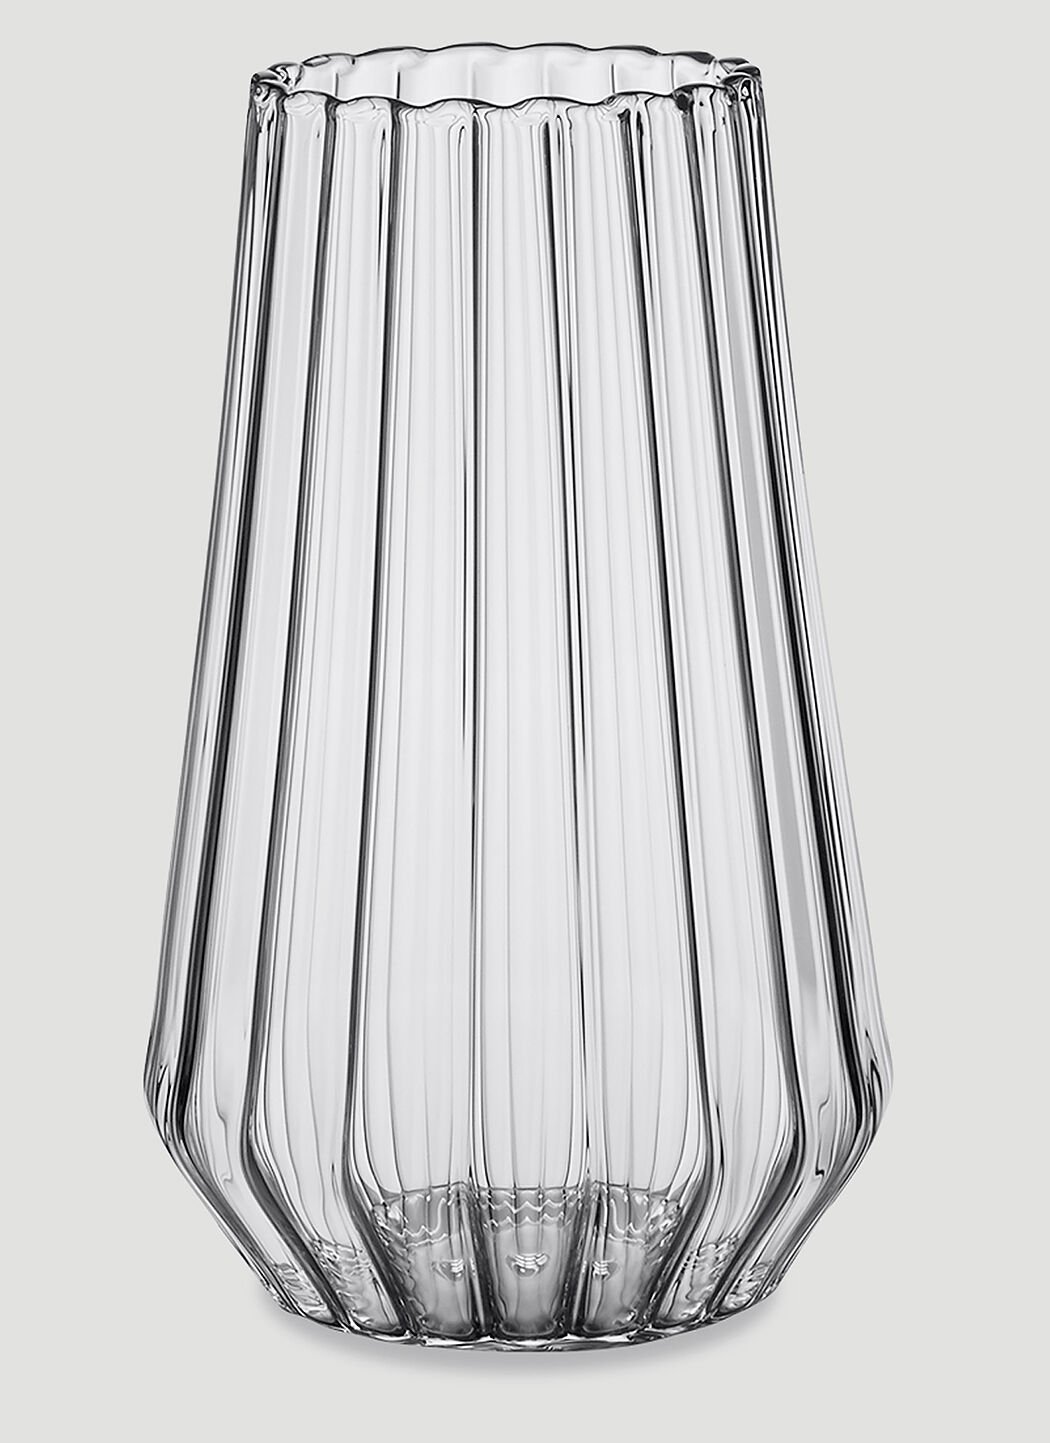 Fferrone Design Stella Large Vase Transparent wps0644556